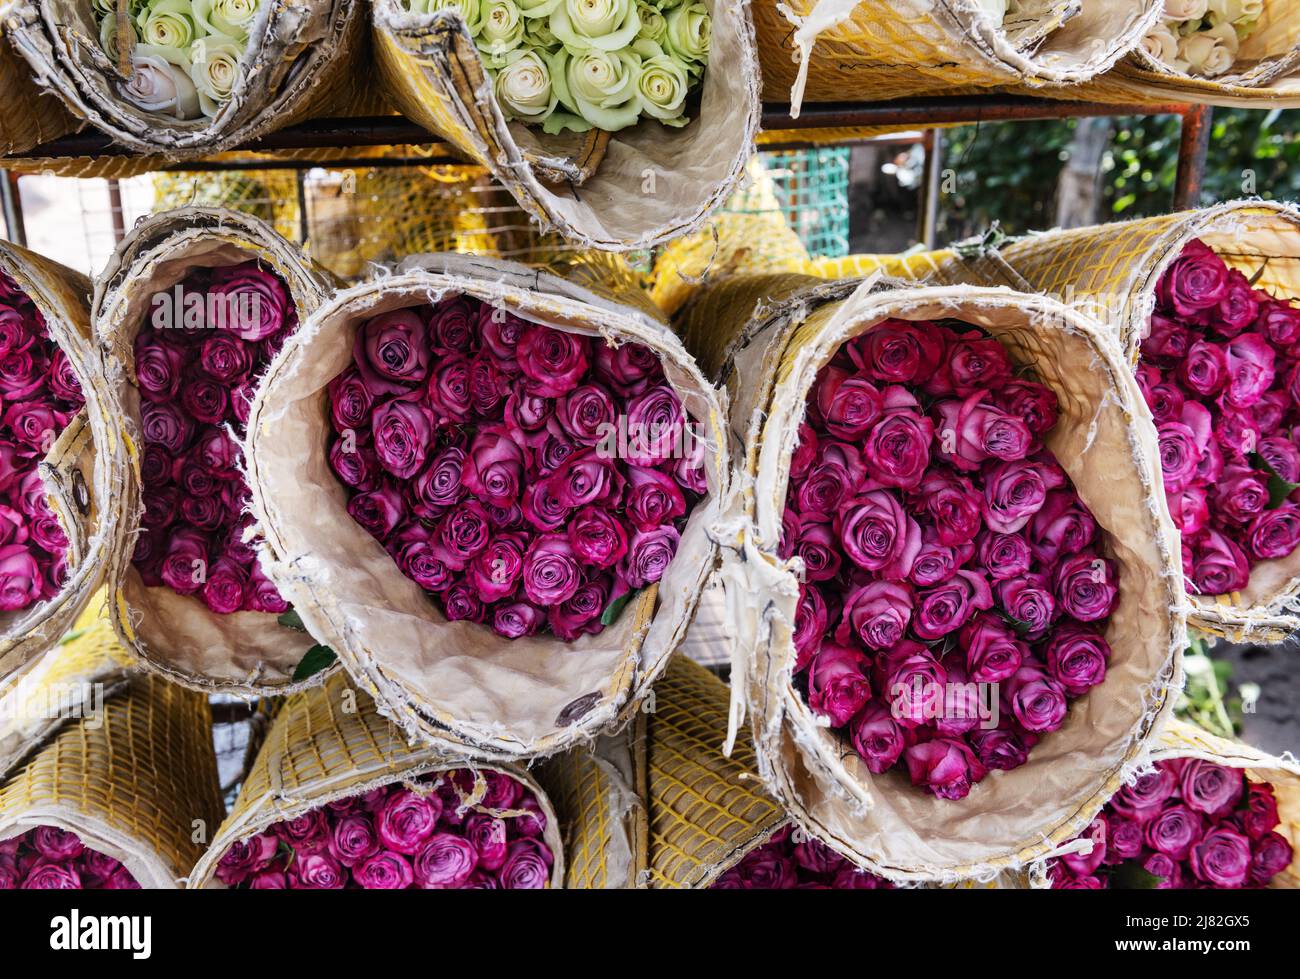 Blumensträuße von lila Rosen für die Lieferung vorbereitet Stockfoto